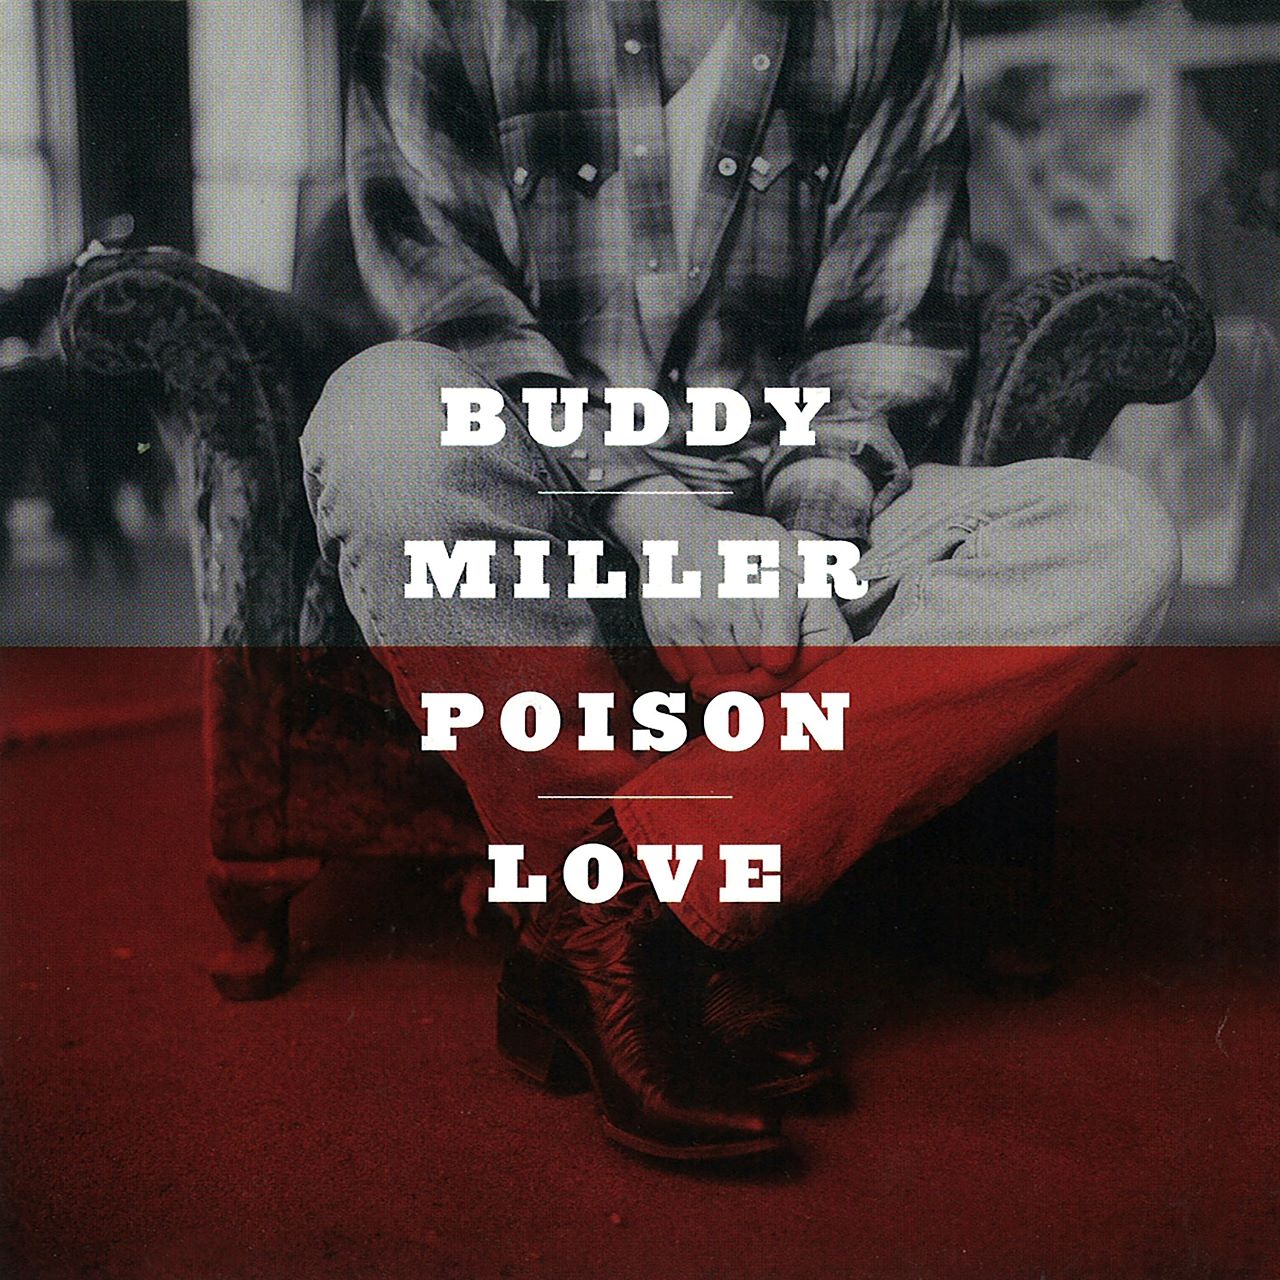 Buddy Miller - Poison Love cover album